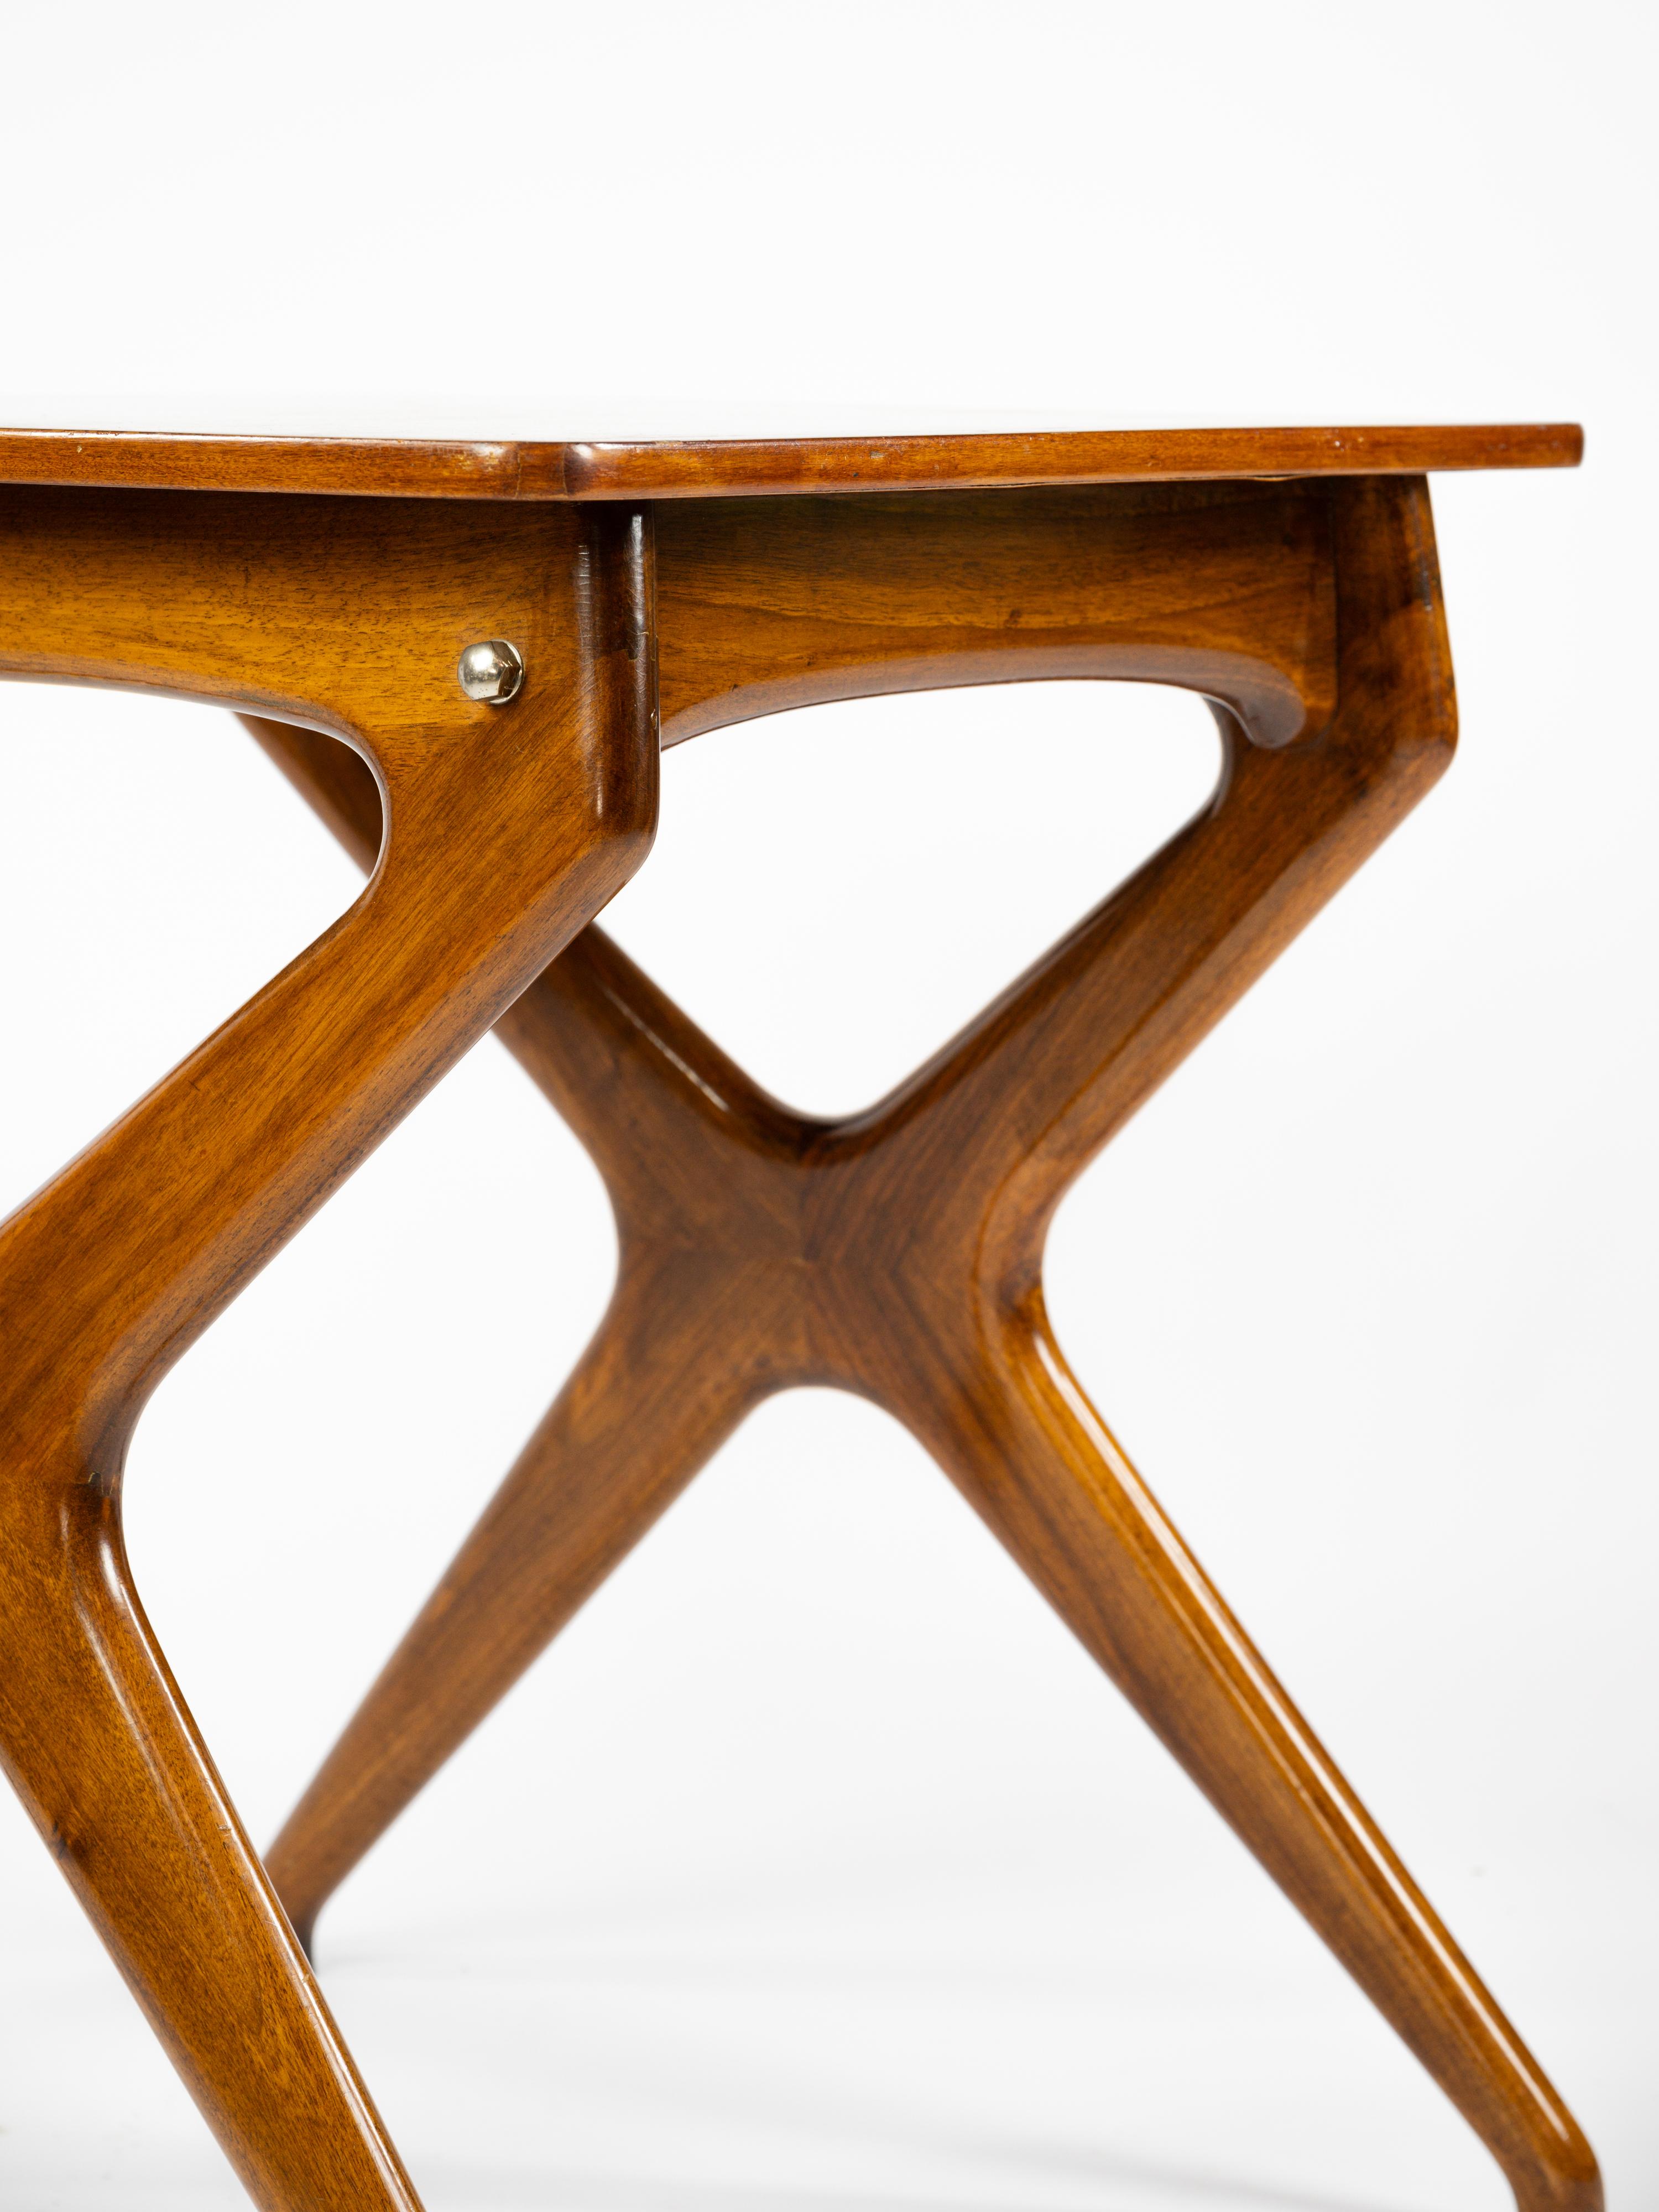 Jolie table d'appoint en noyer massif Design/One par Ico Parisi pour le studio De Baggis en Italie. 

Circa 1950

Détails en laiton. 

Très bon état. 

Plus d'informations sur demande